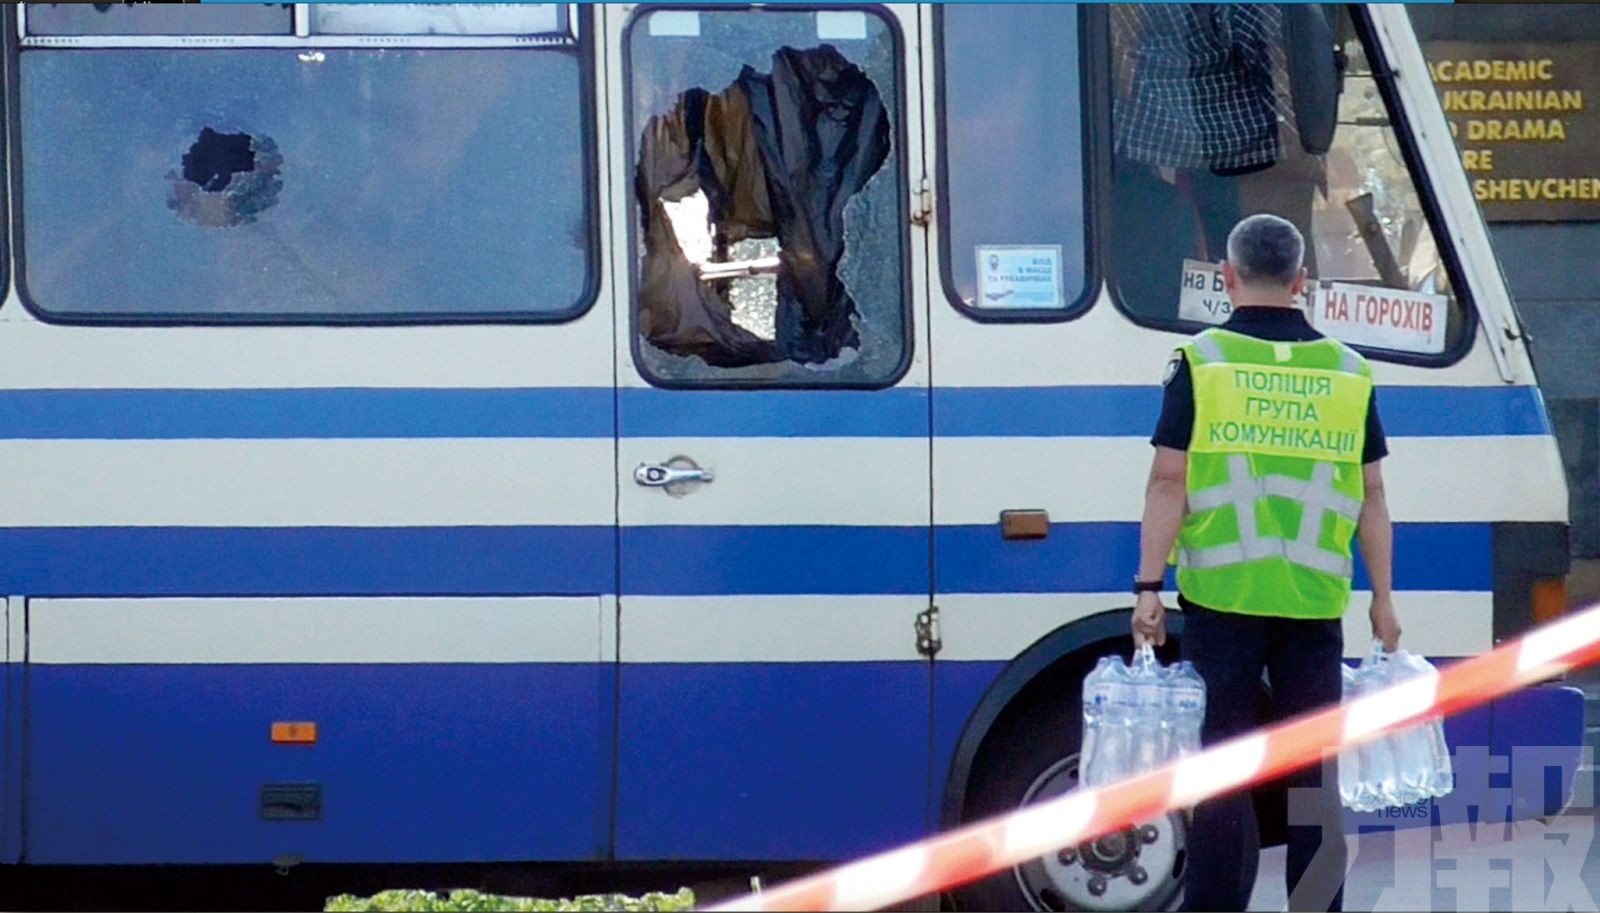 烏克蘭巴士劫持案神奇落幕